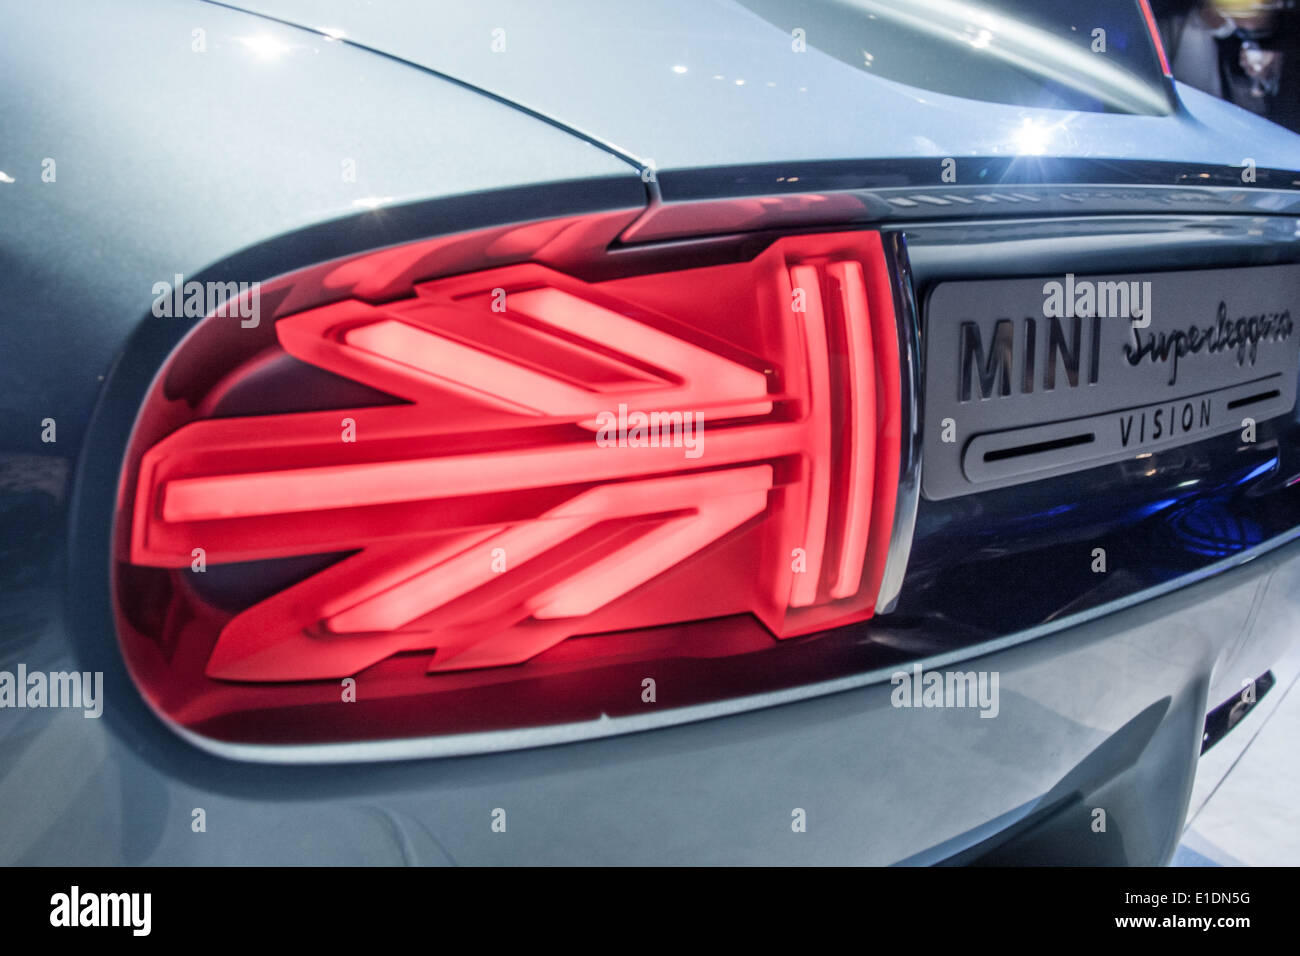 Luci di coda, BMW Mini Superleggera Vision concept car, lanciato a Villa d'Este Maggio 2014 Foto Stock